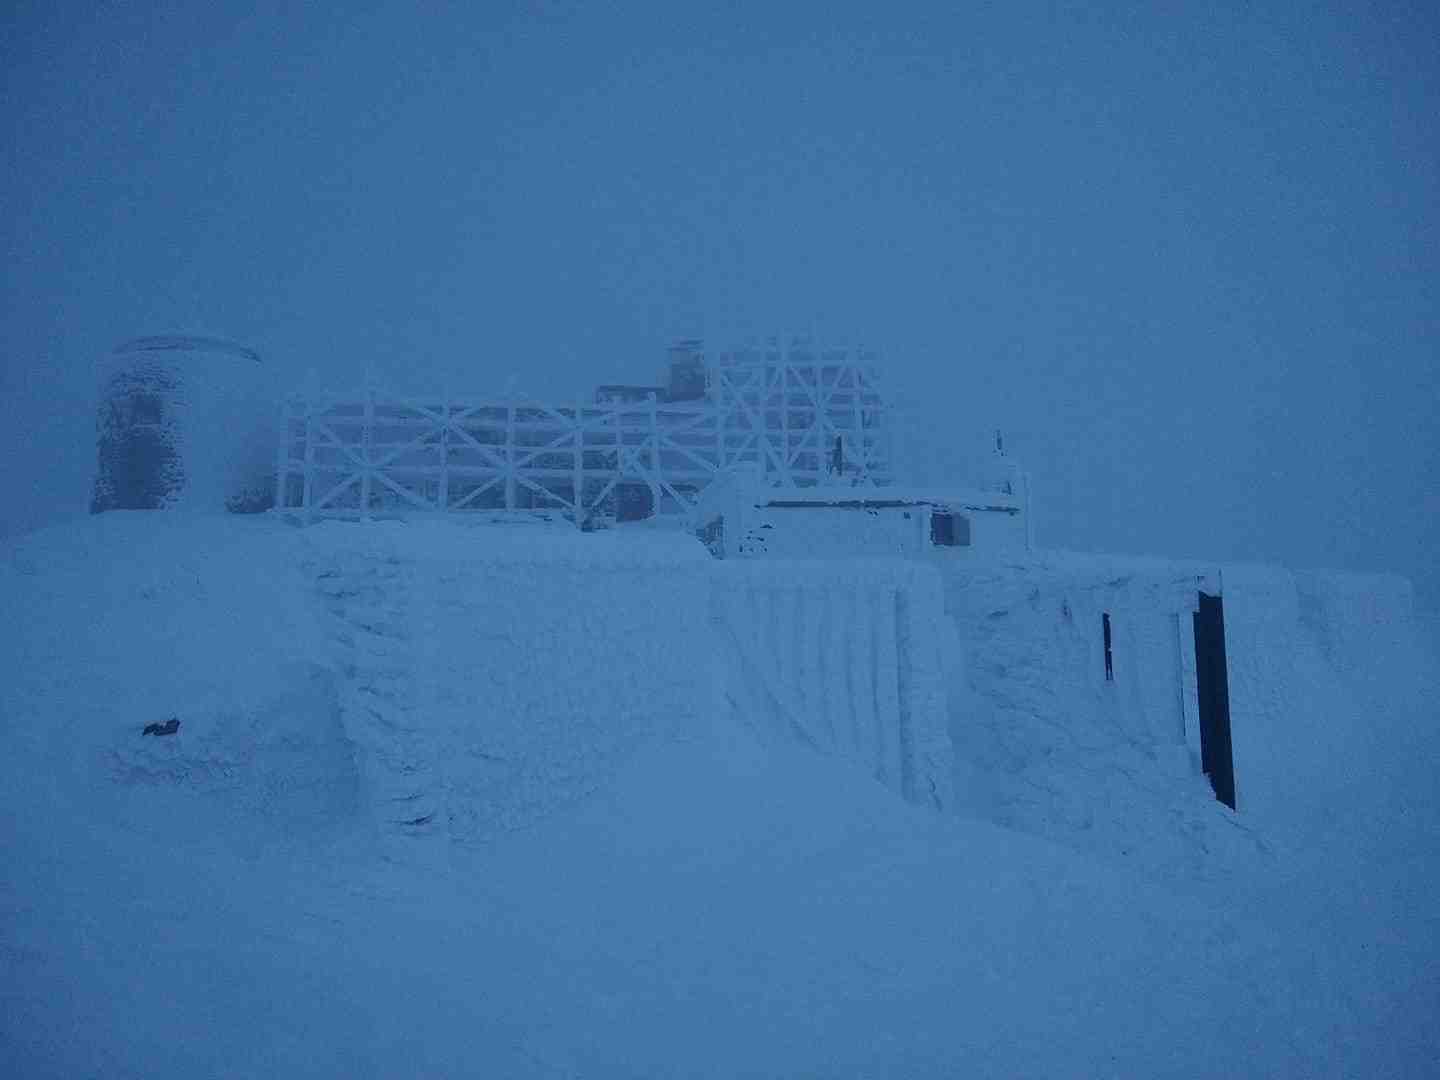 У Карпати прийшла справжня зима: в мережі показали світлини засніжених гір (фото)